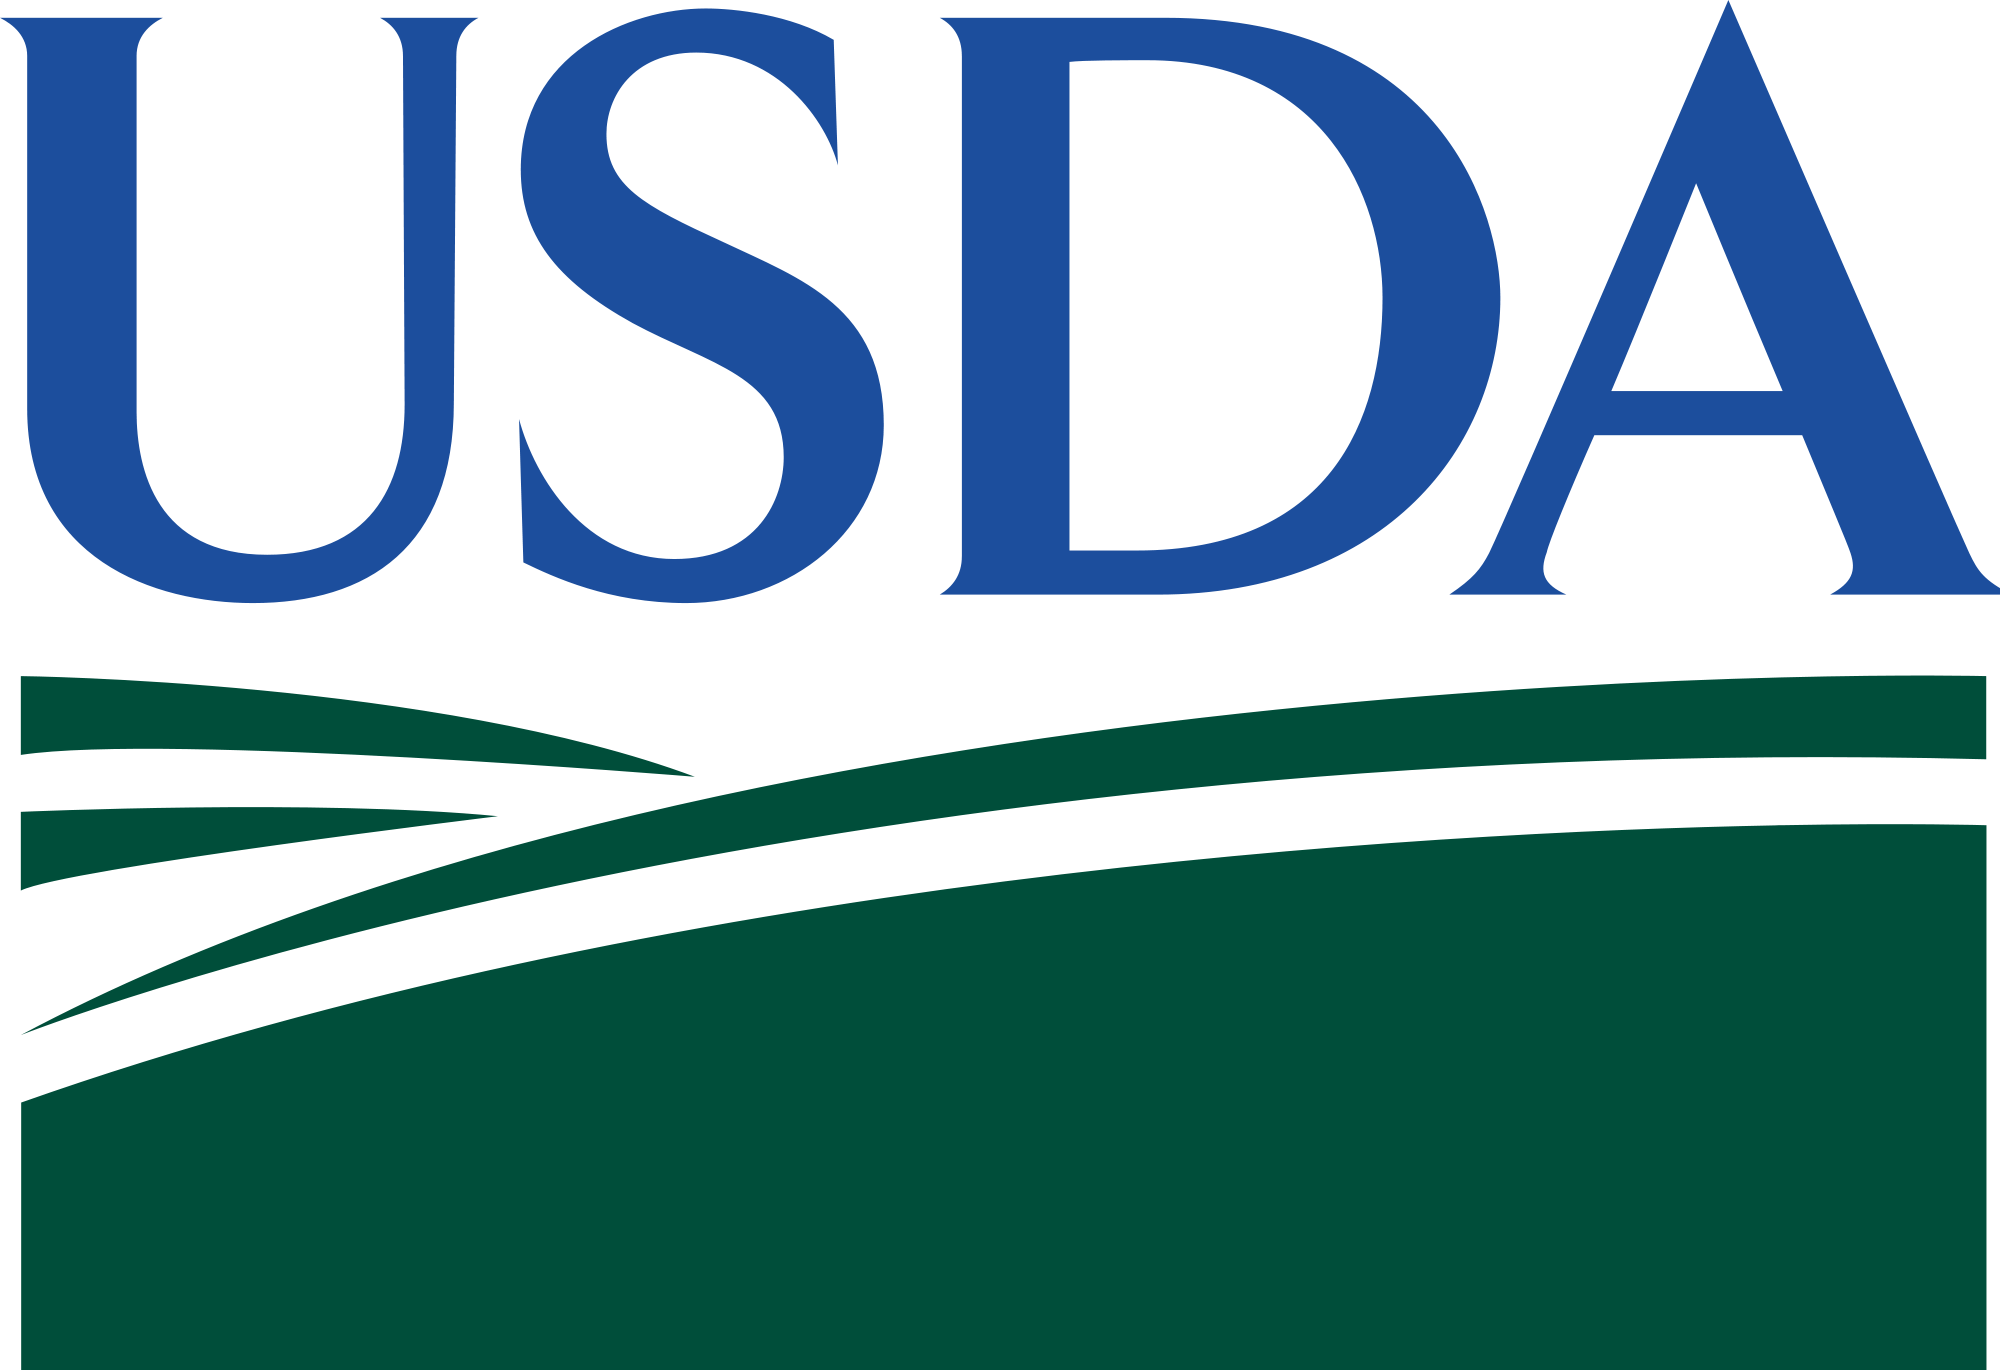 USDA Logo - File:USDA logo.png - Wikimedia Commons